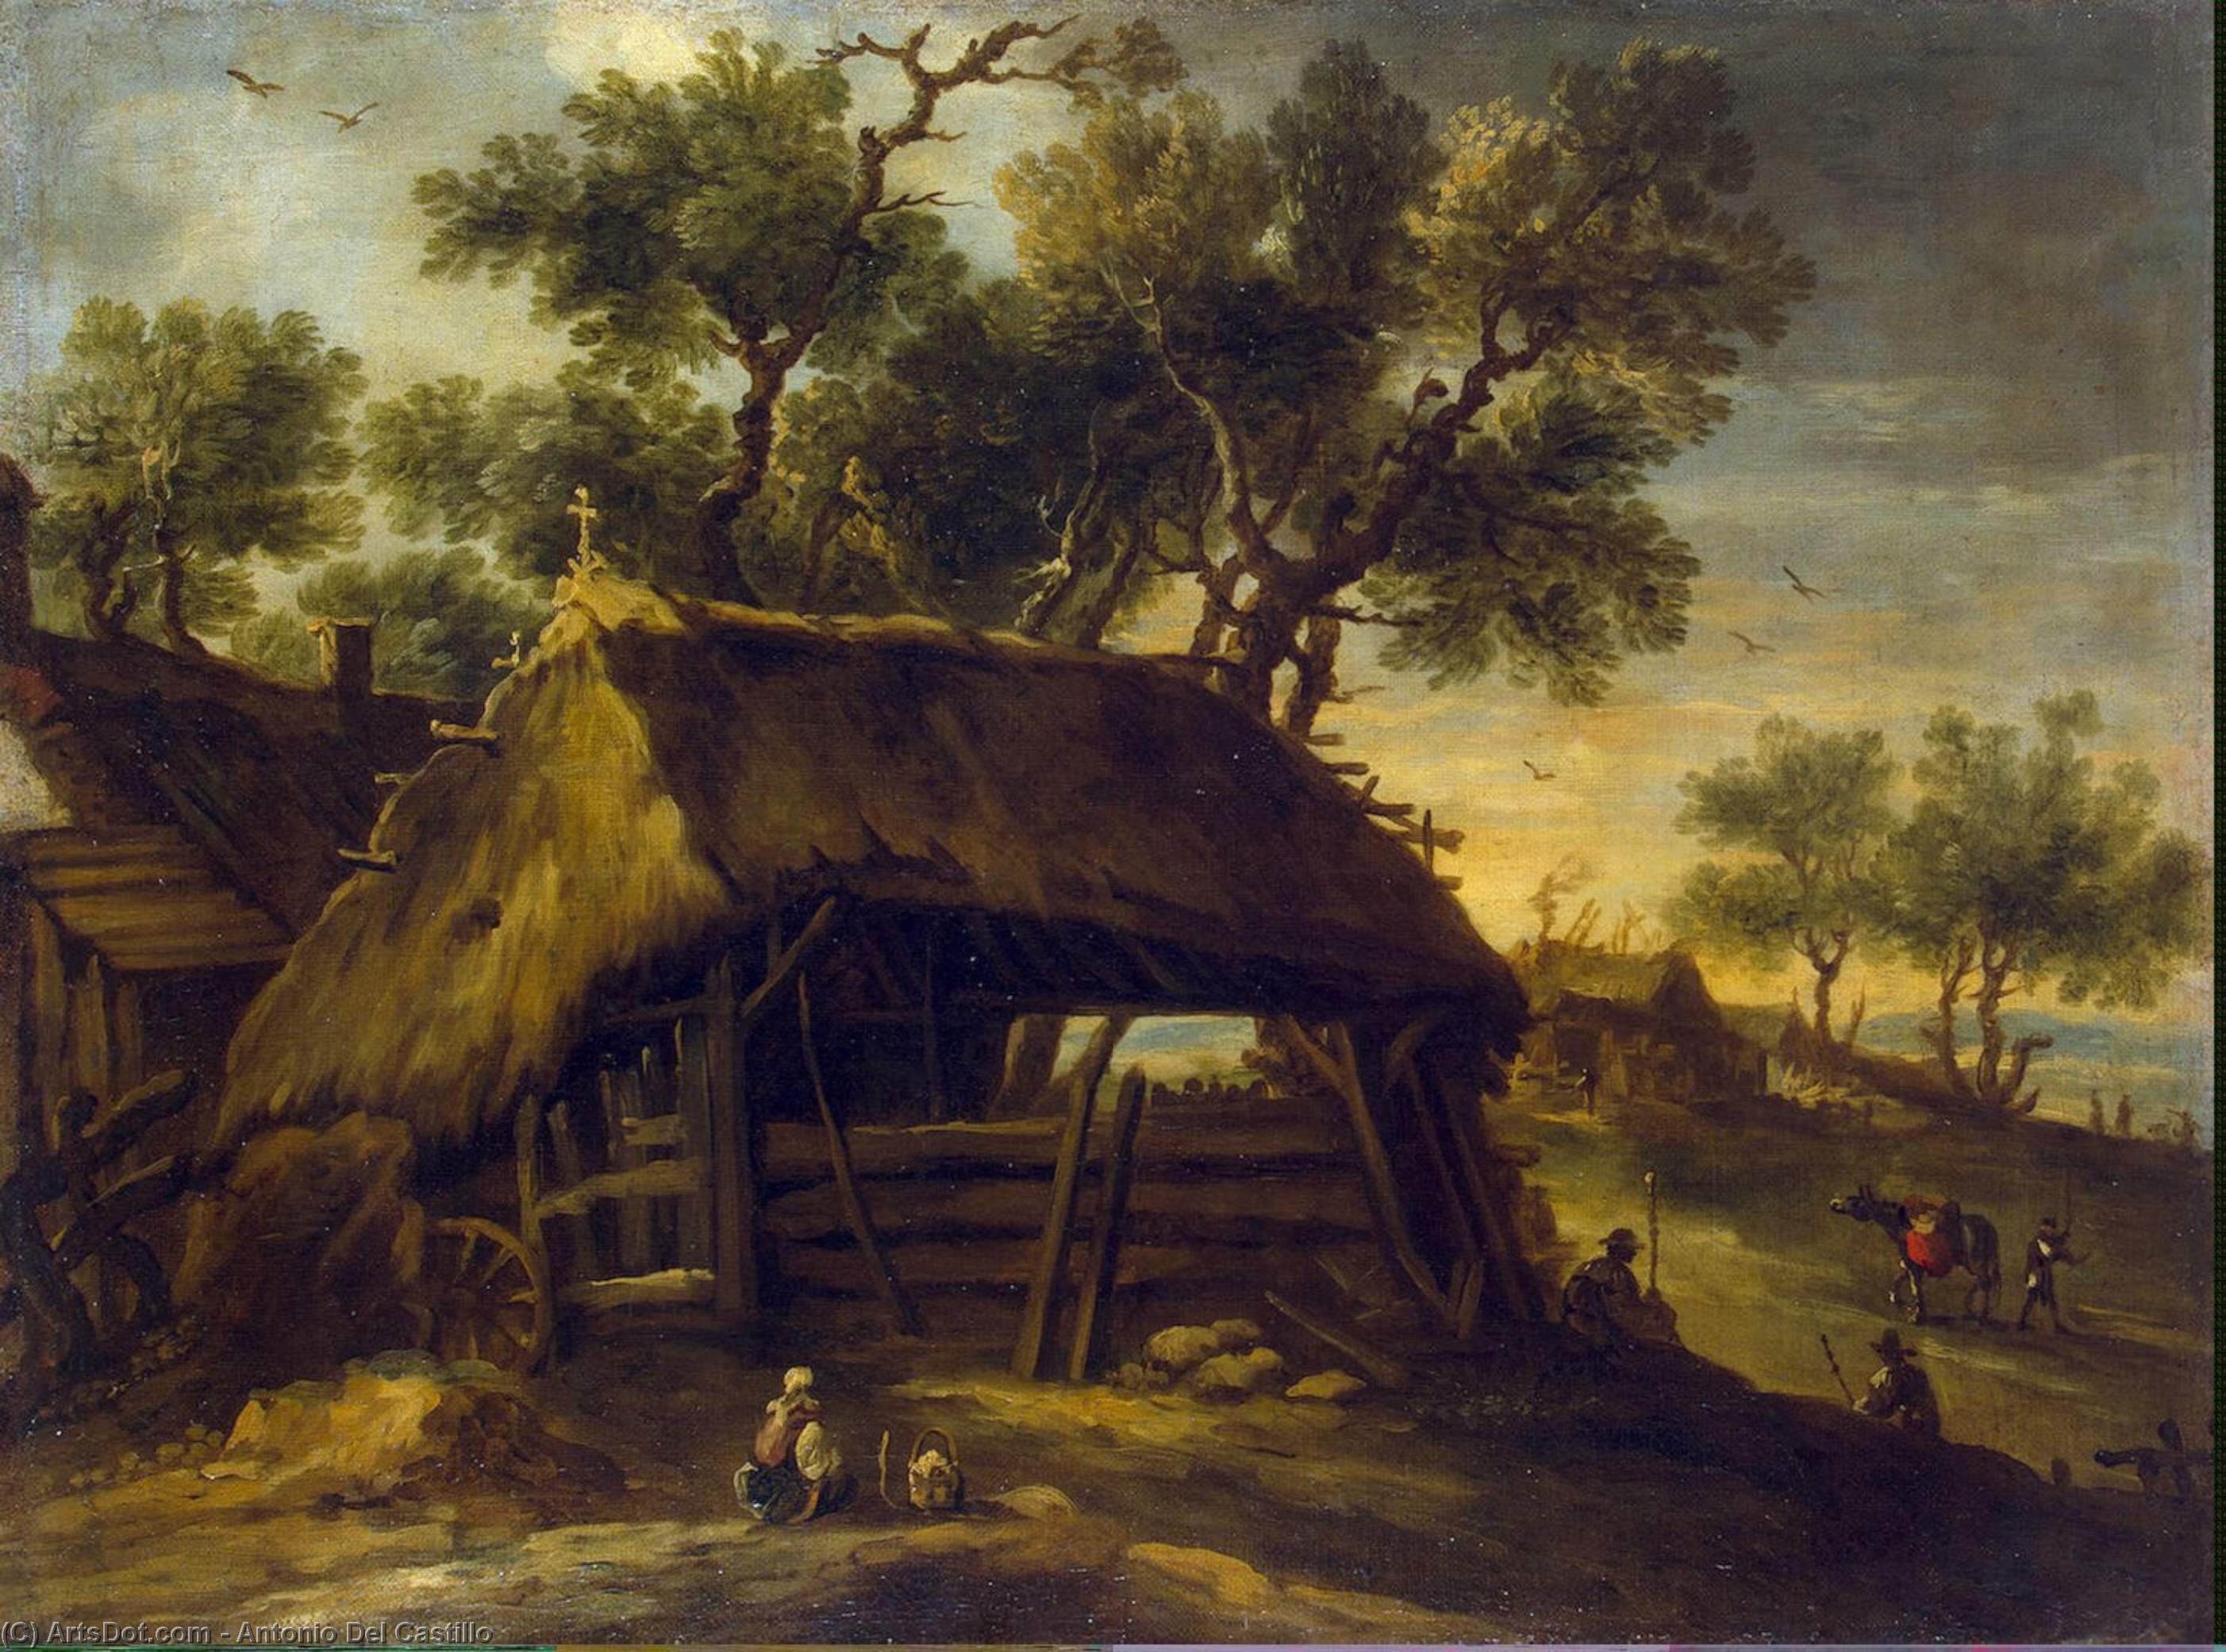 Order Oil Painting Replica Landscape with Huts, 1650 by Antonio Del Castillo | ArtsDot.com